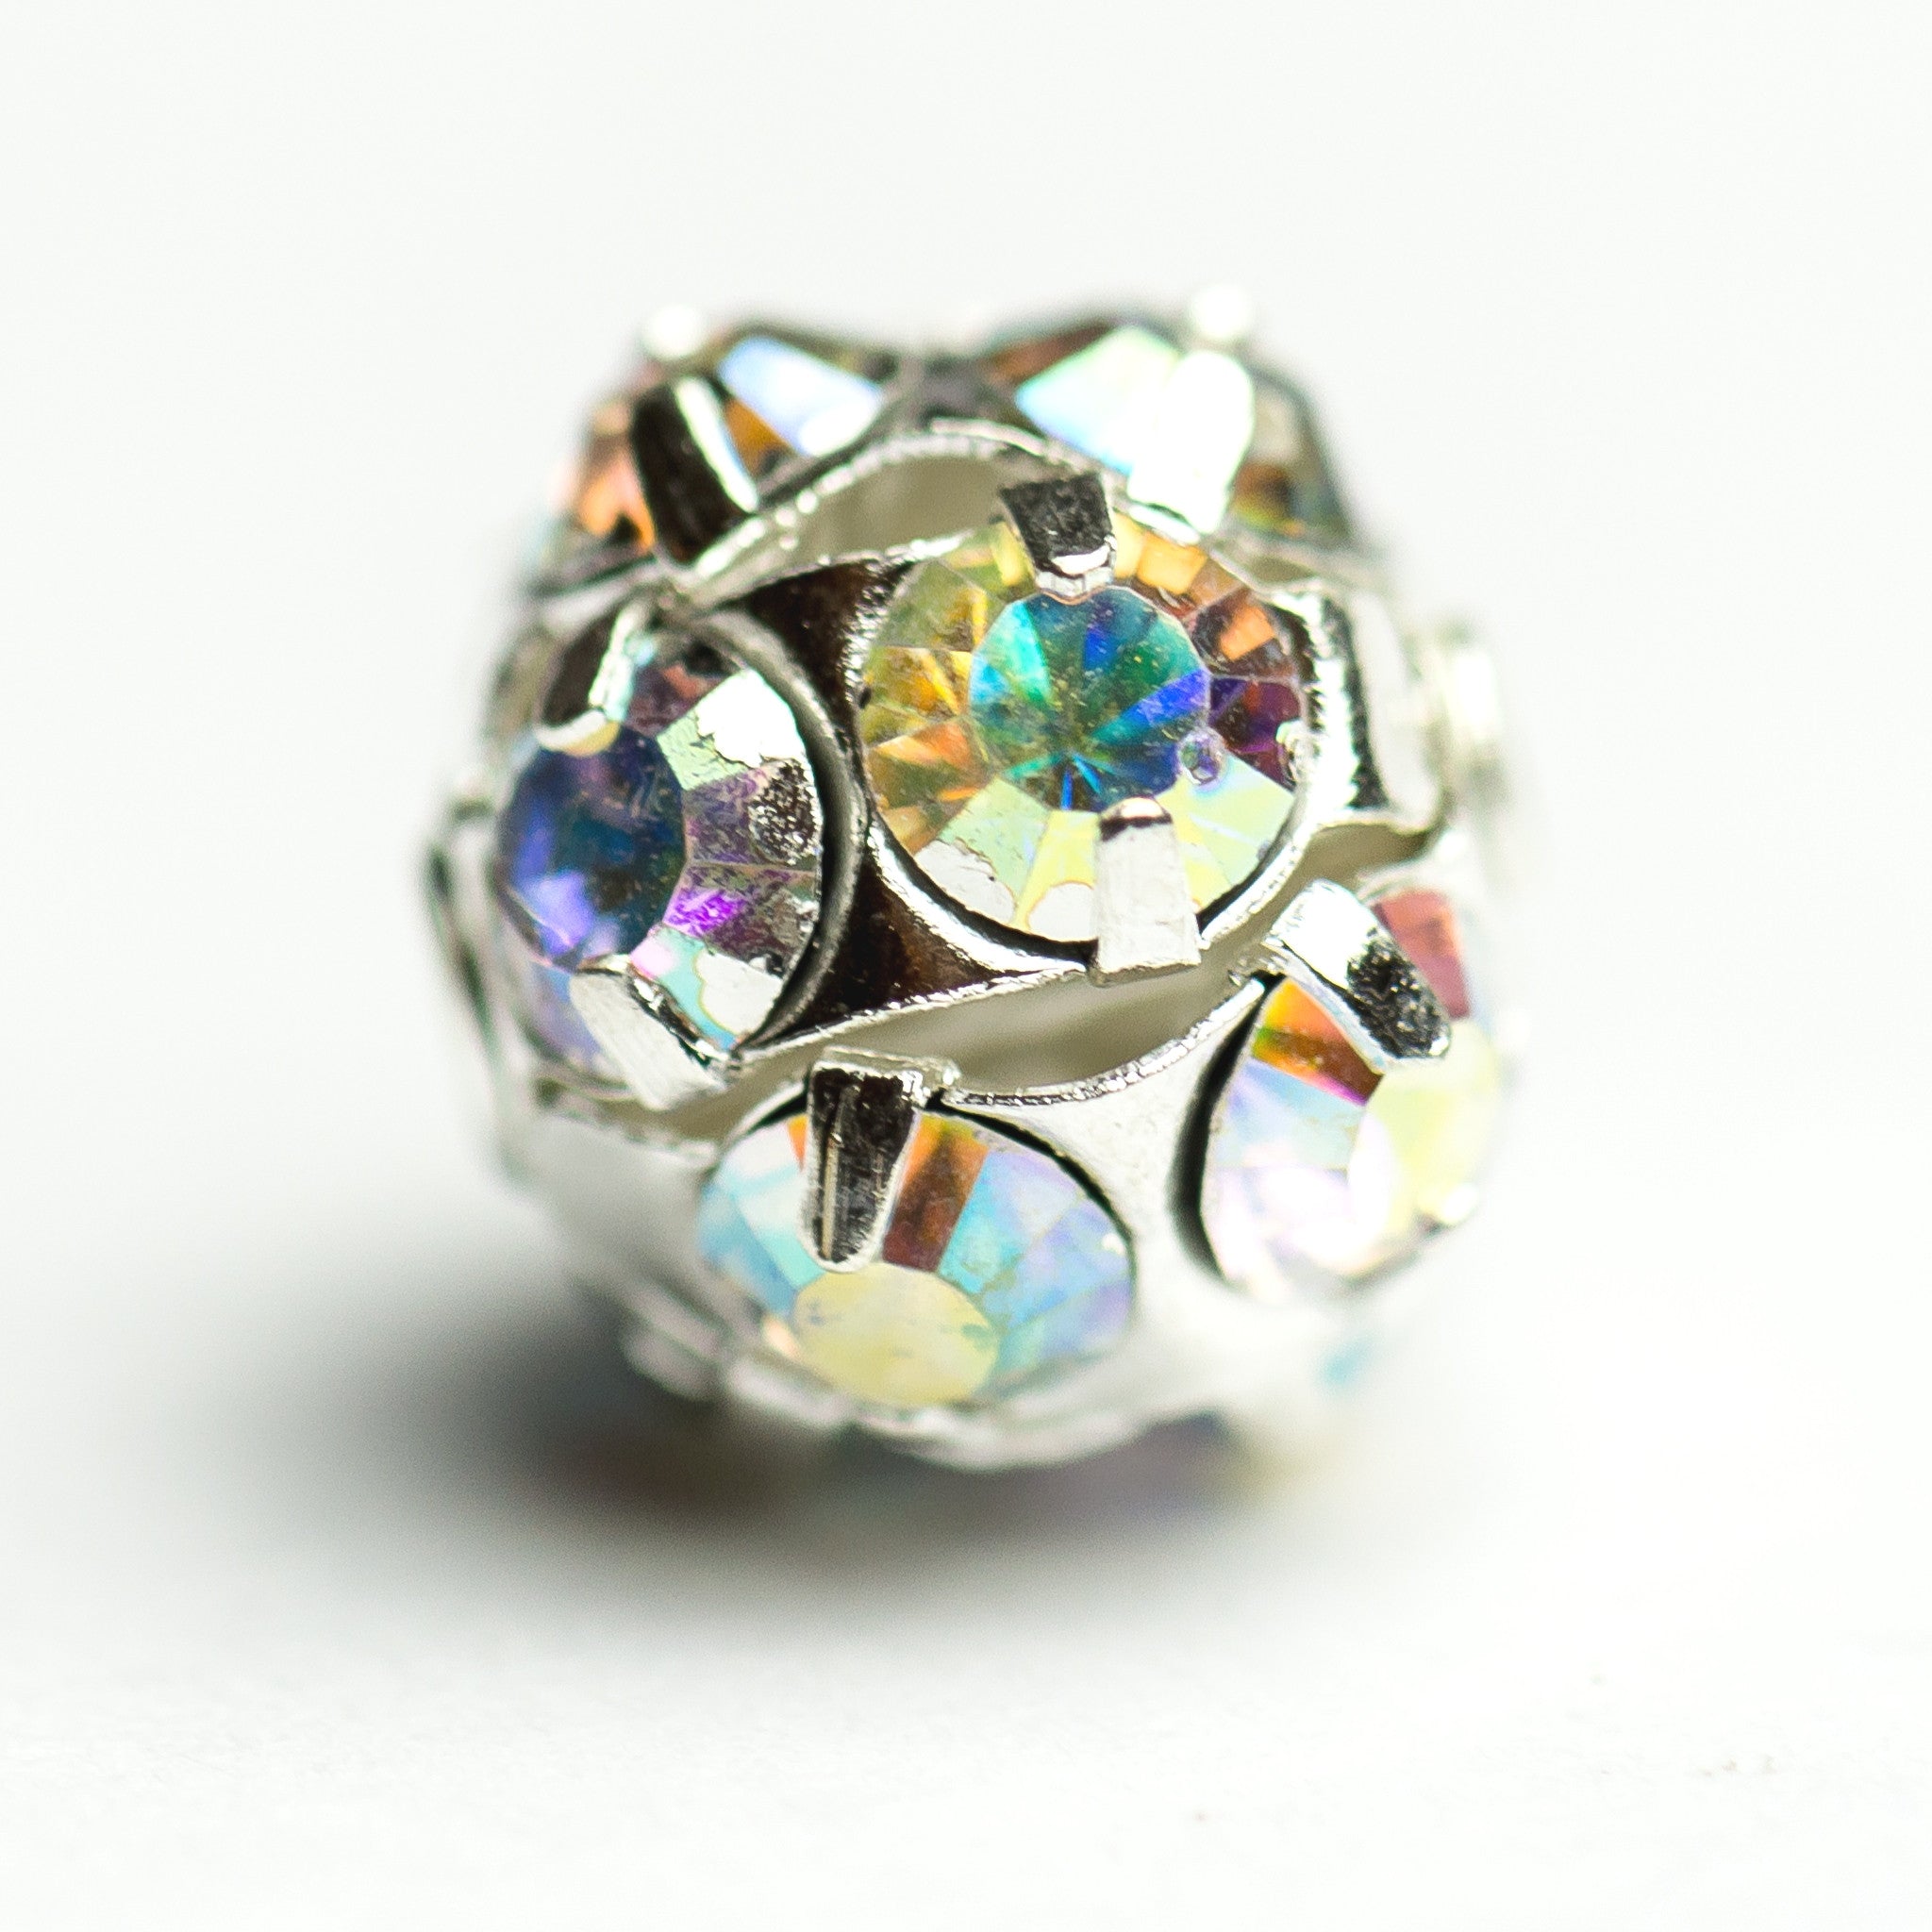 5MM Rhinestone Ball Crystal Ab/Rhodium (12 pieces)